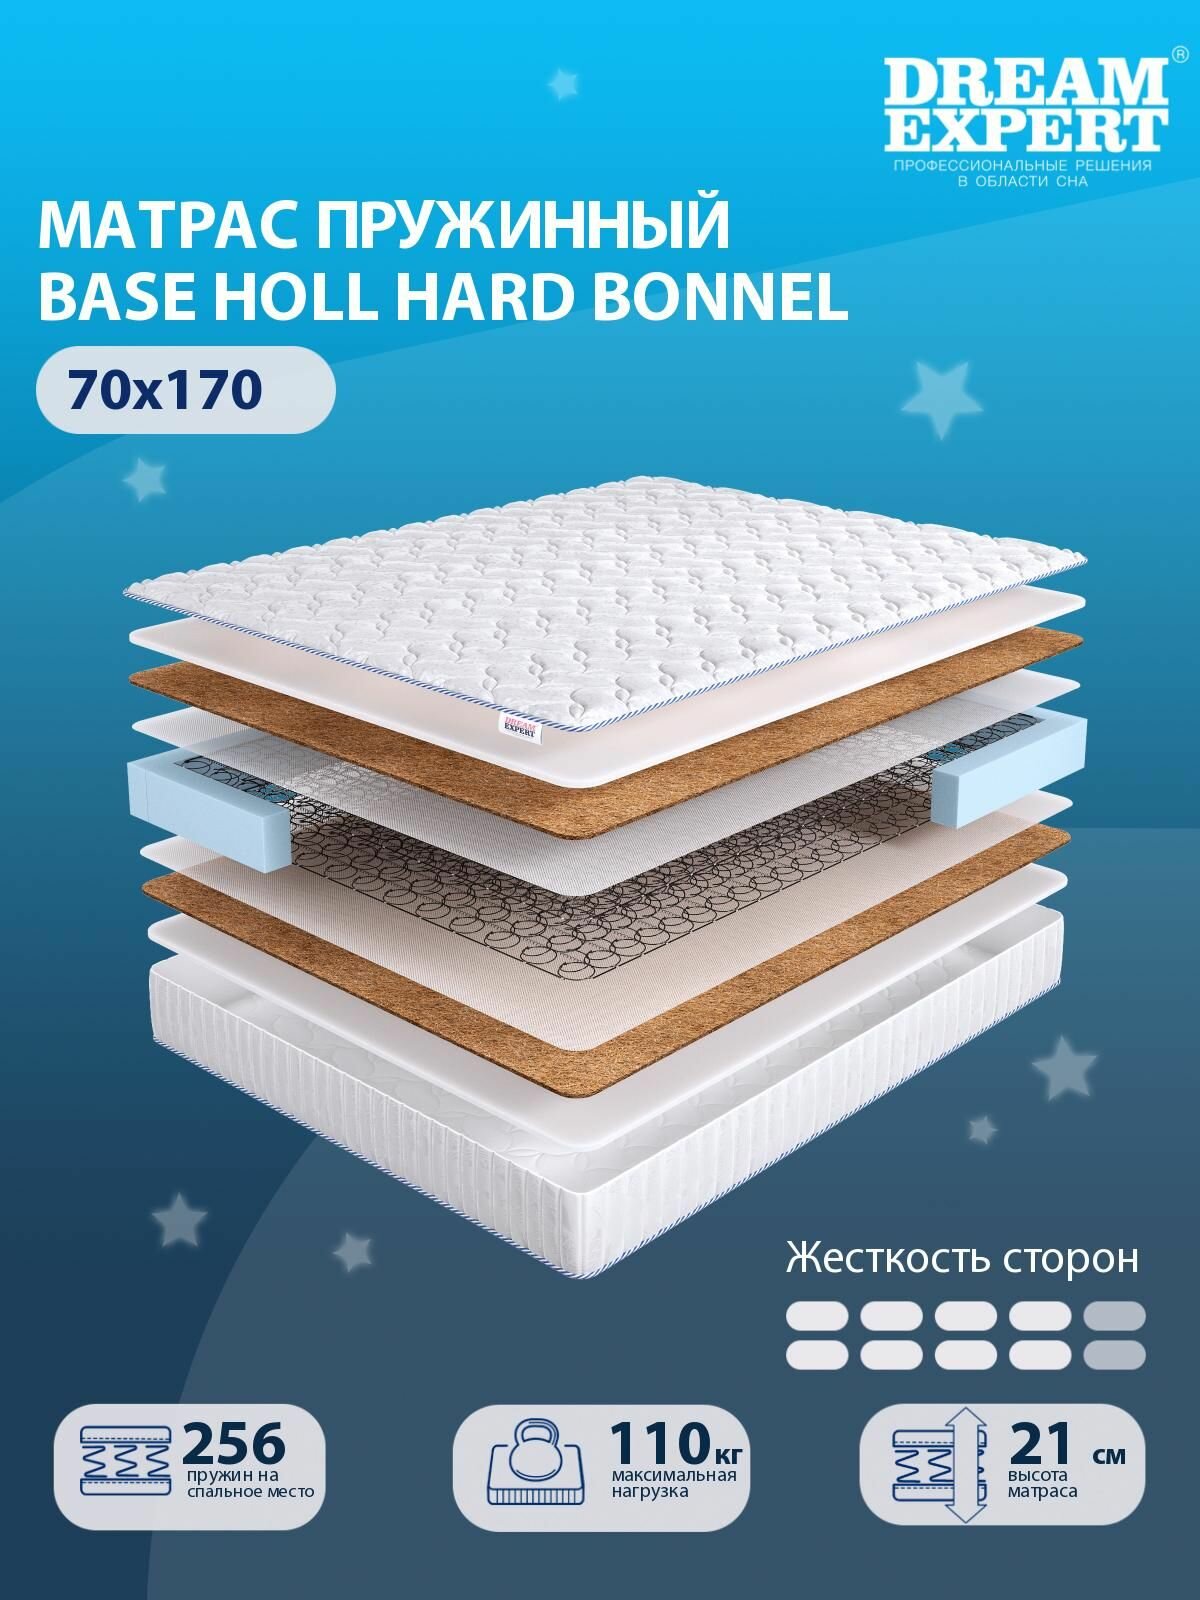 Матрас DreamExpert Base Holl Hard Bonnel выше средней жесткости, детский, зависимый пружинный блок, на кровать 70x170